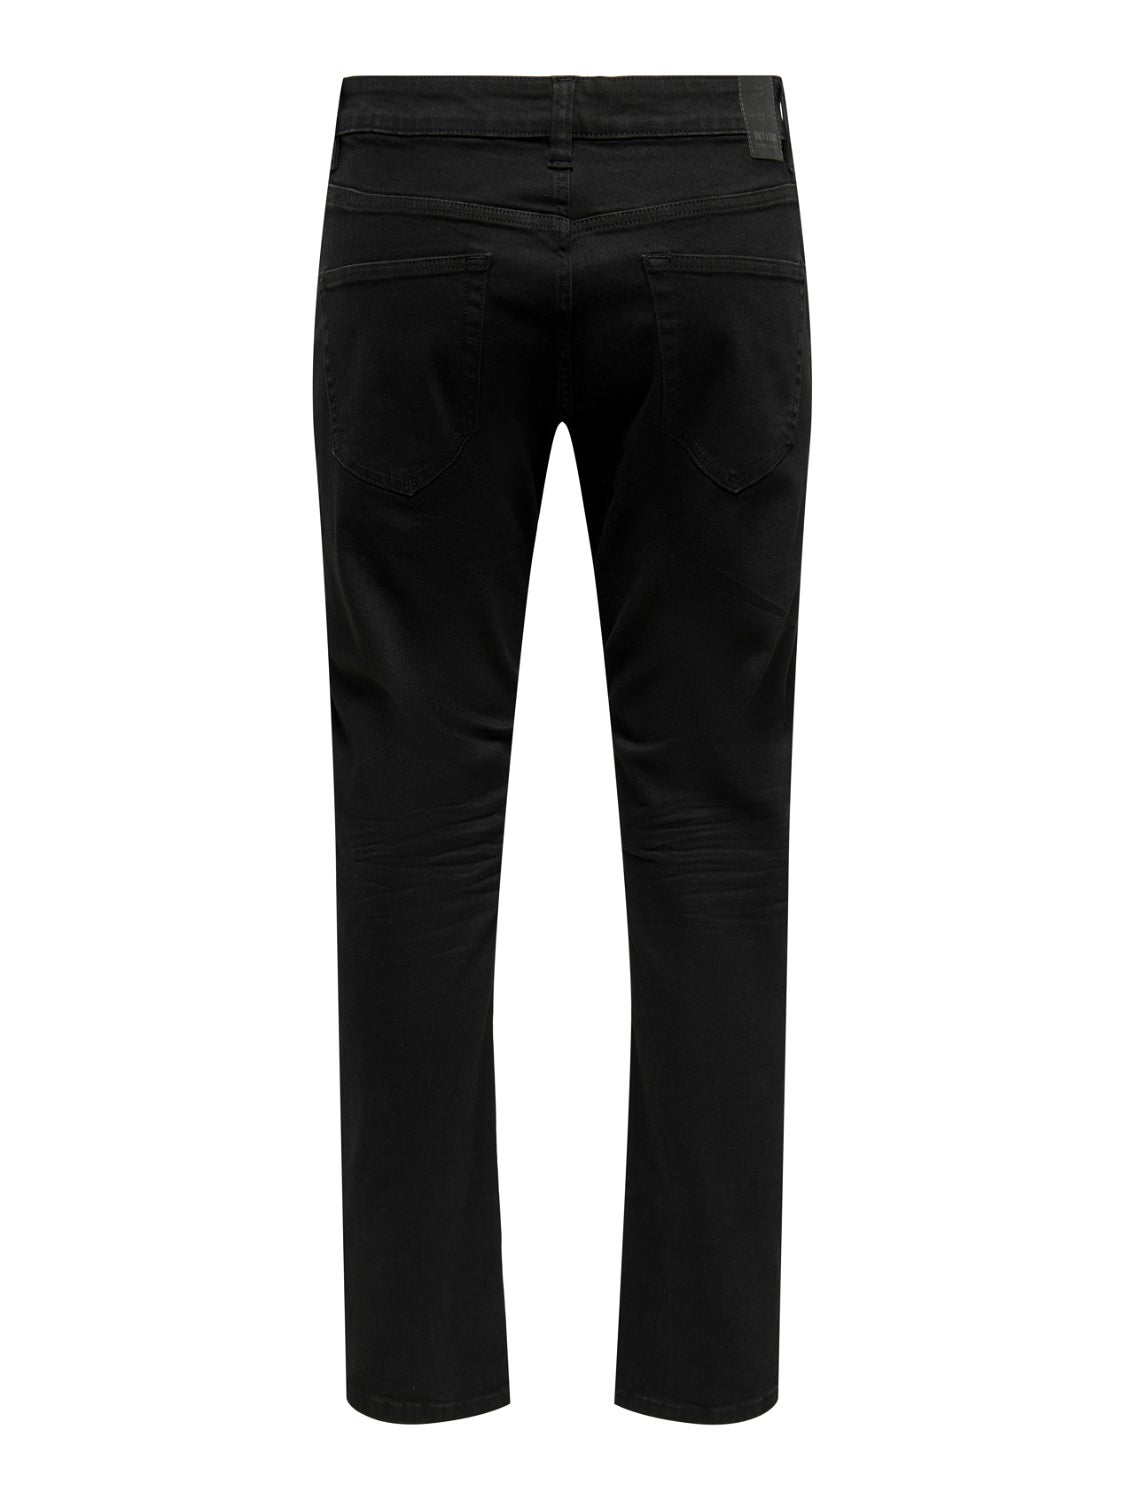 Buy Girls Black Regular Fit Jeans Online - 742066